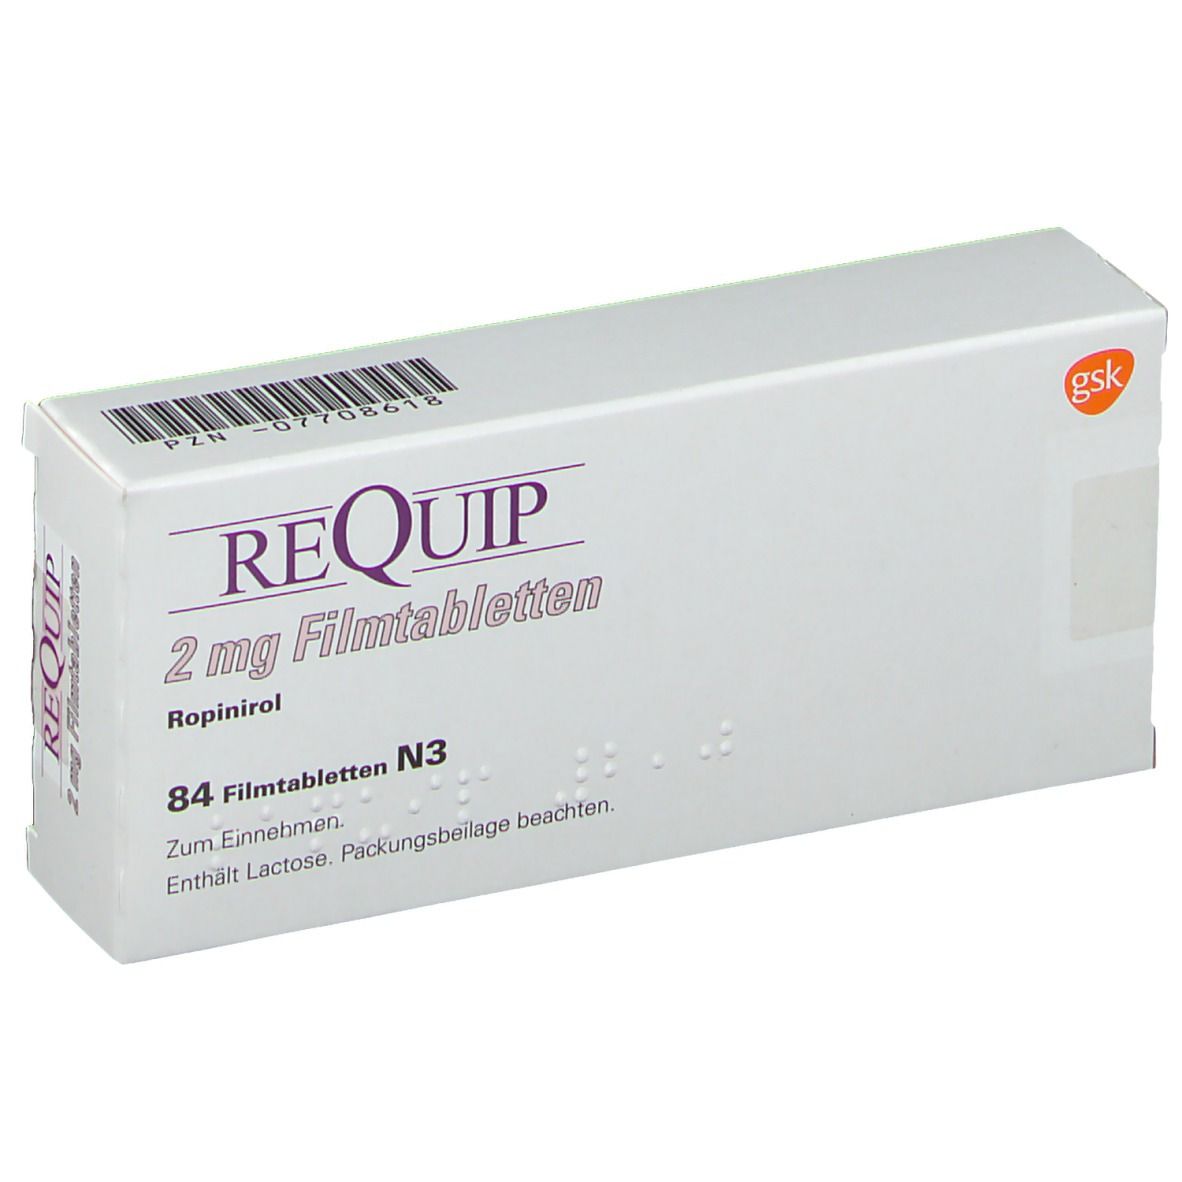 REQUIP® 2 mg